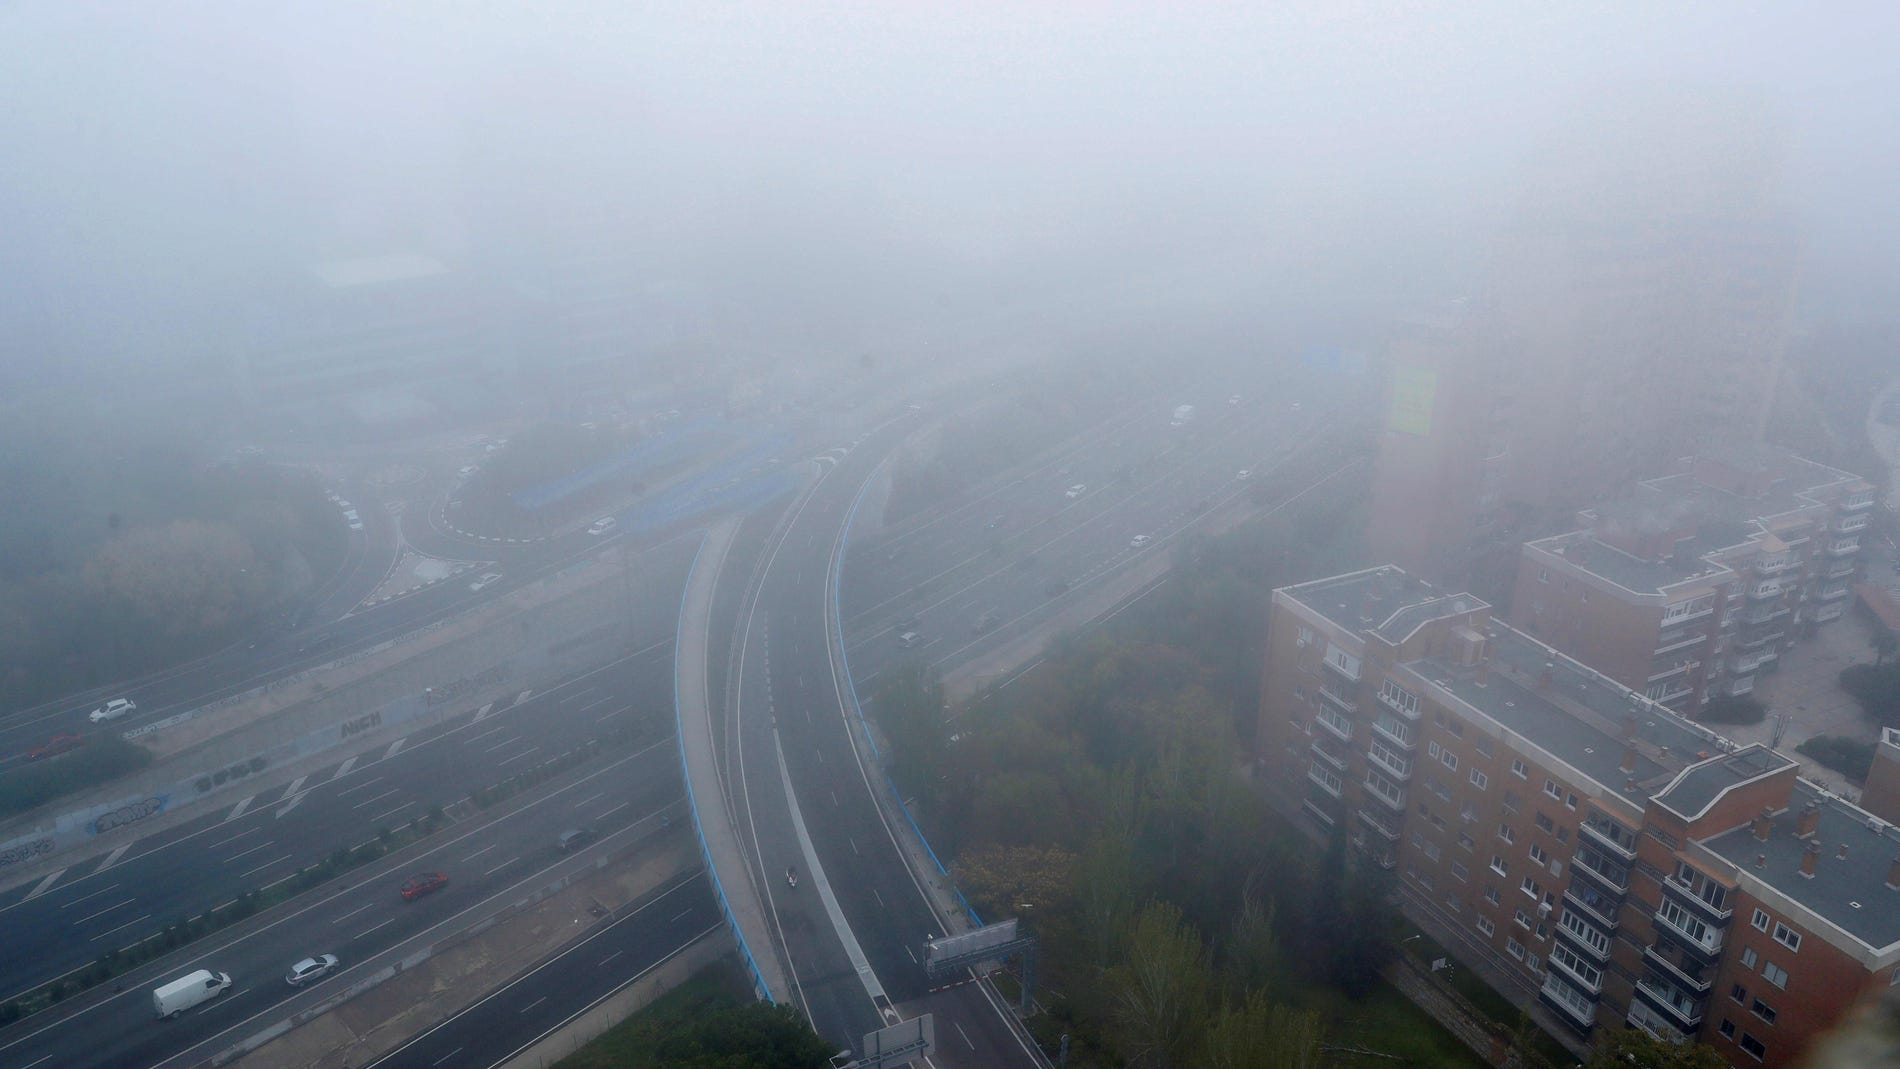 Vista del manto de niebla que cubría el norte de la M-30 de Madrid este martes